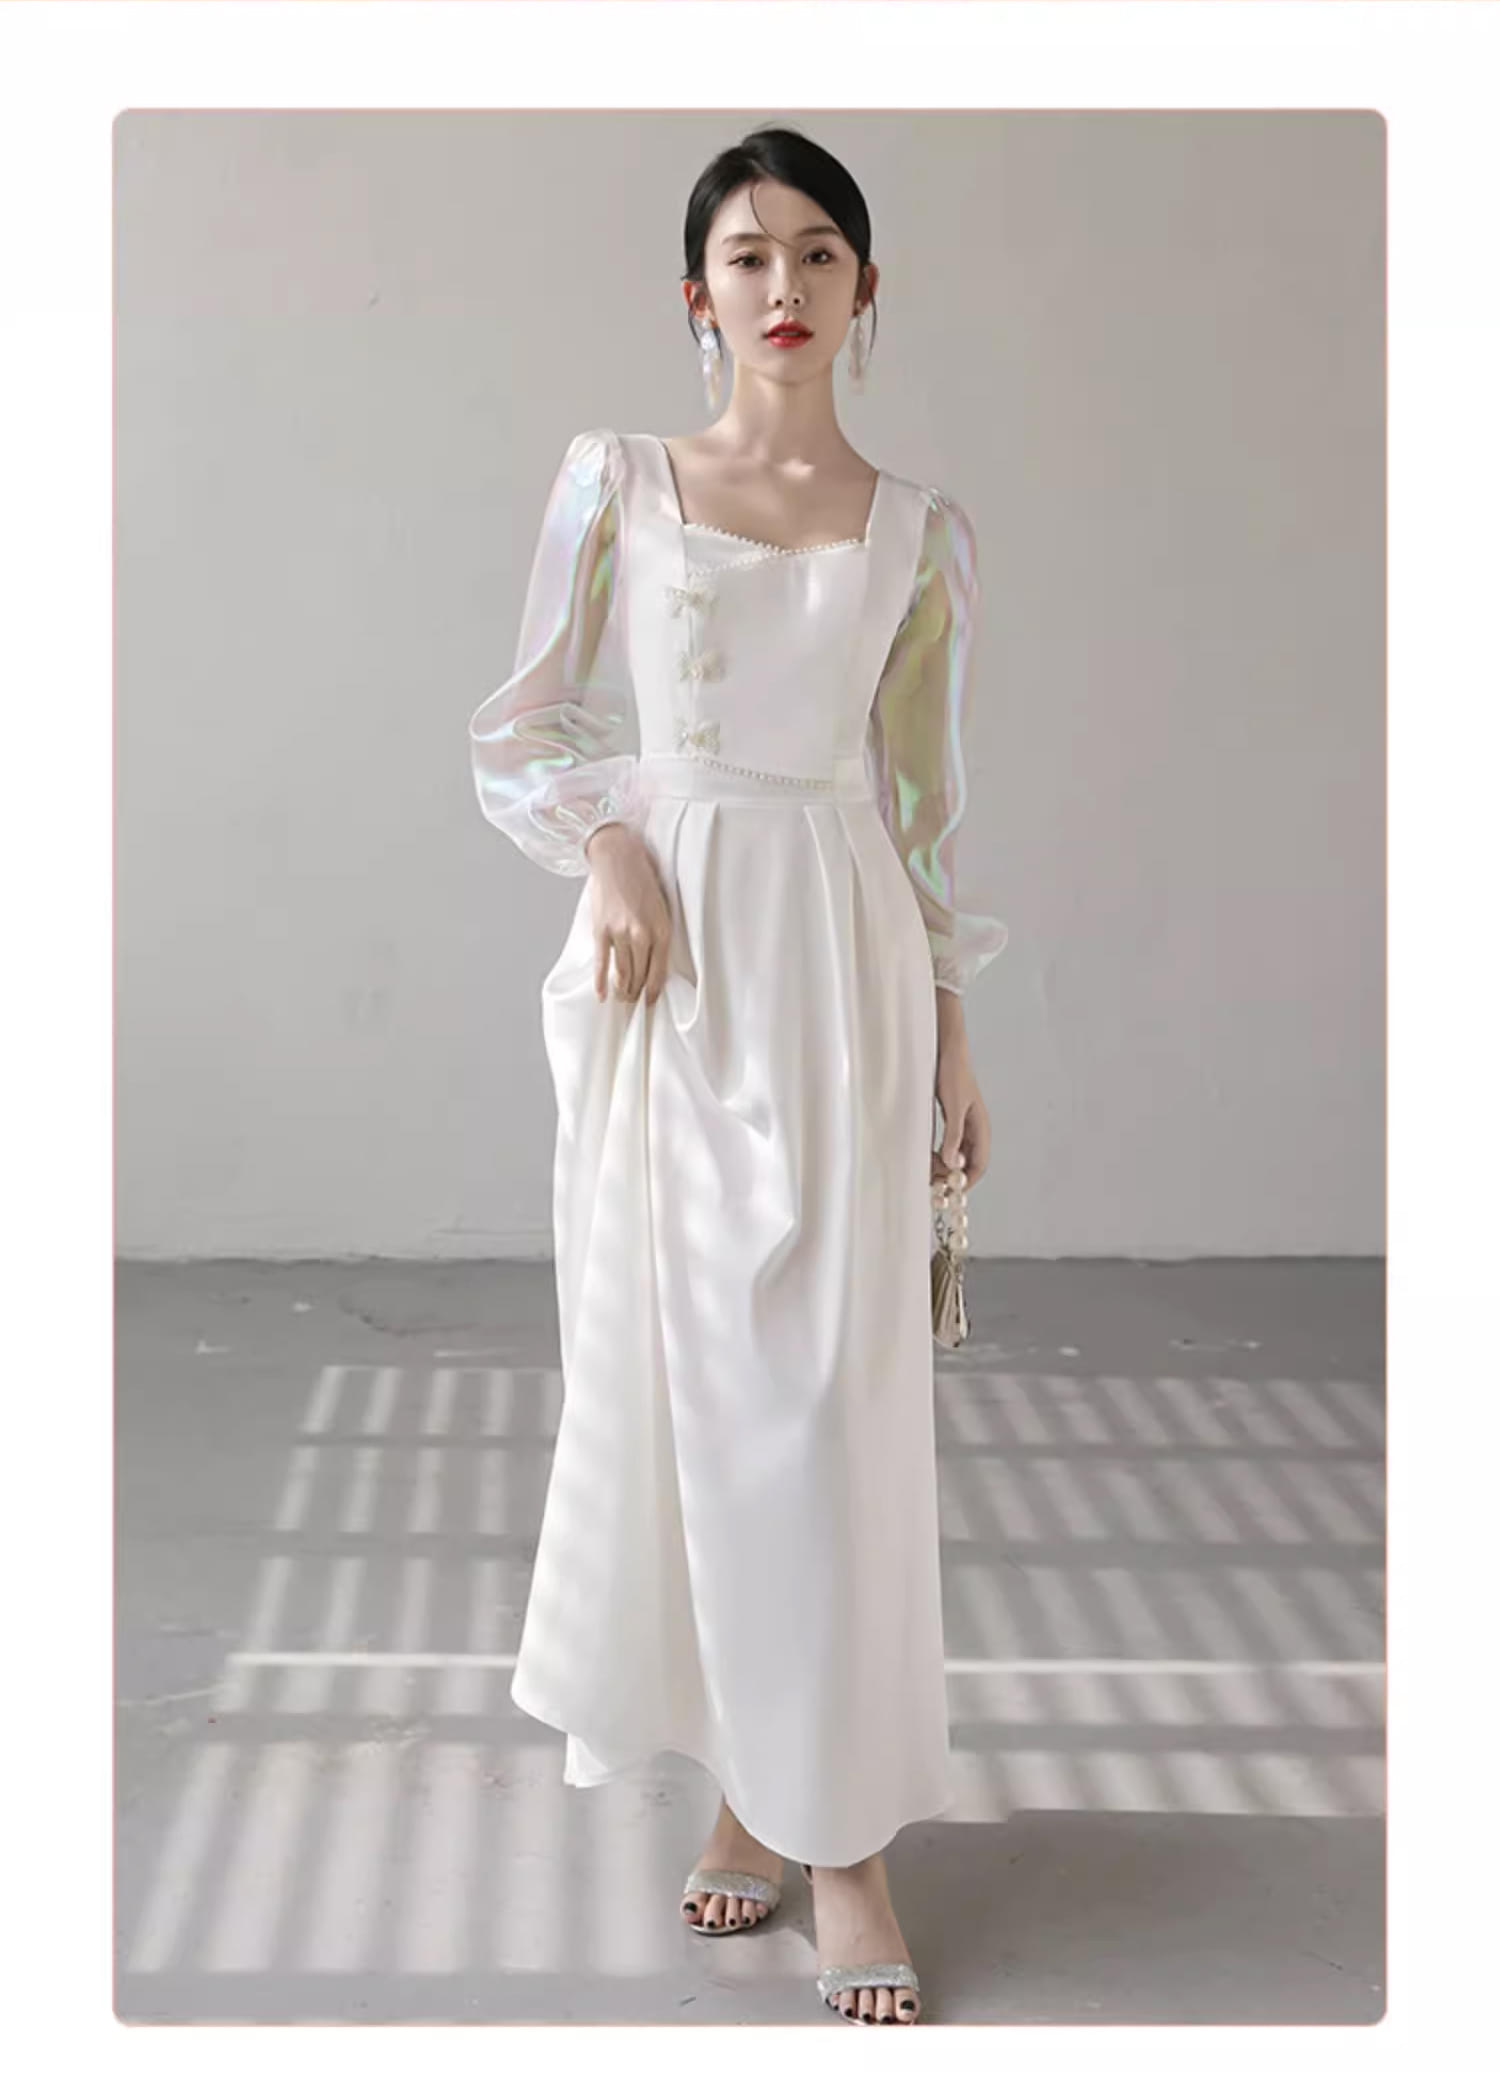 Unique-White-Wedding-Bridal-Party-Attire-Long-Dress-Evening-Gown24